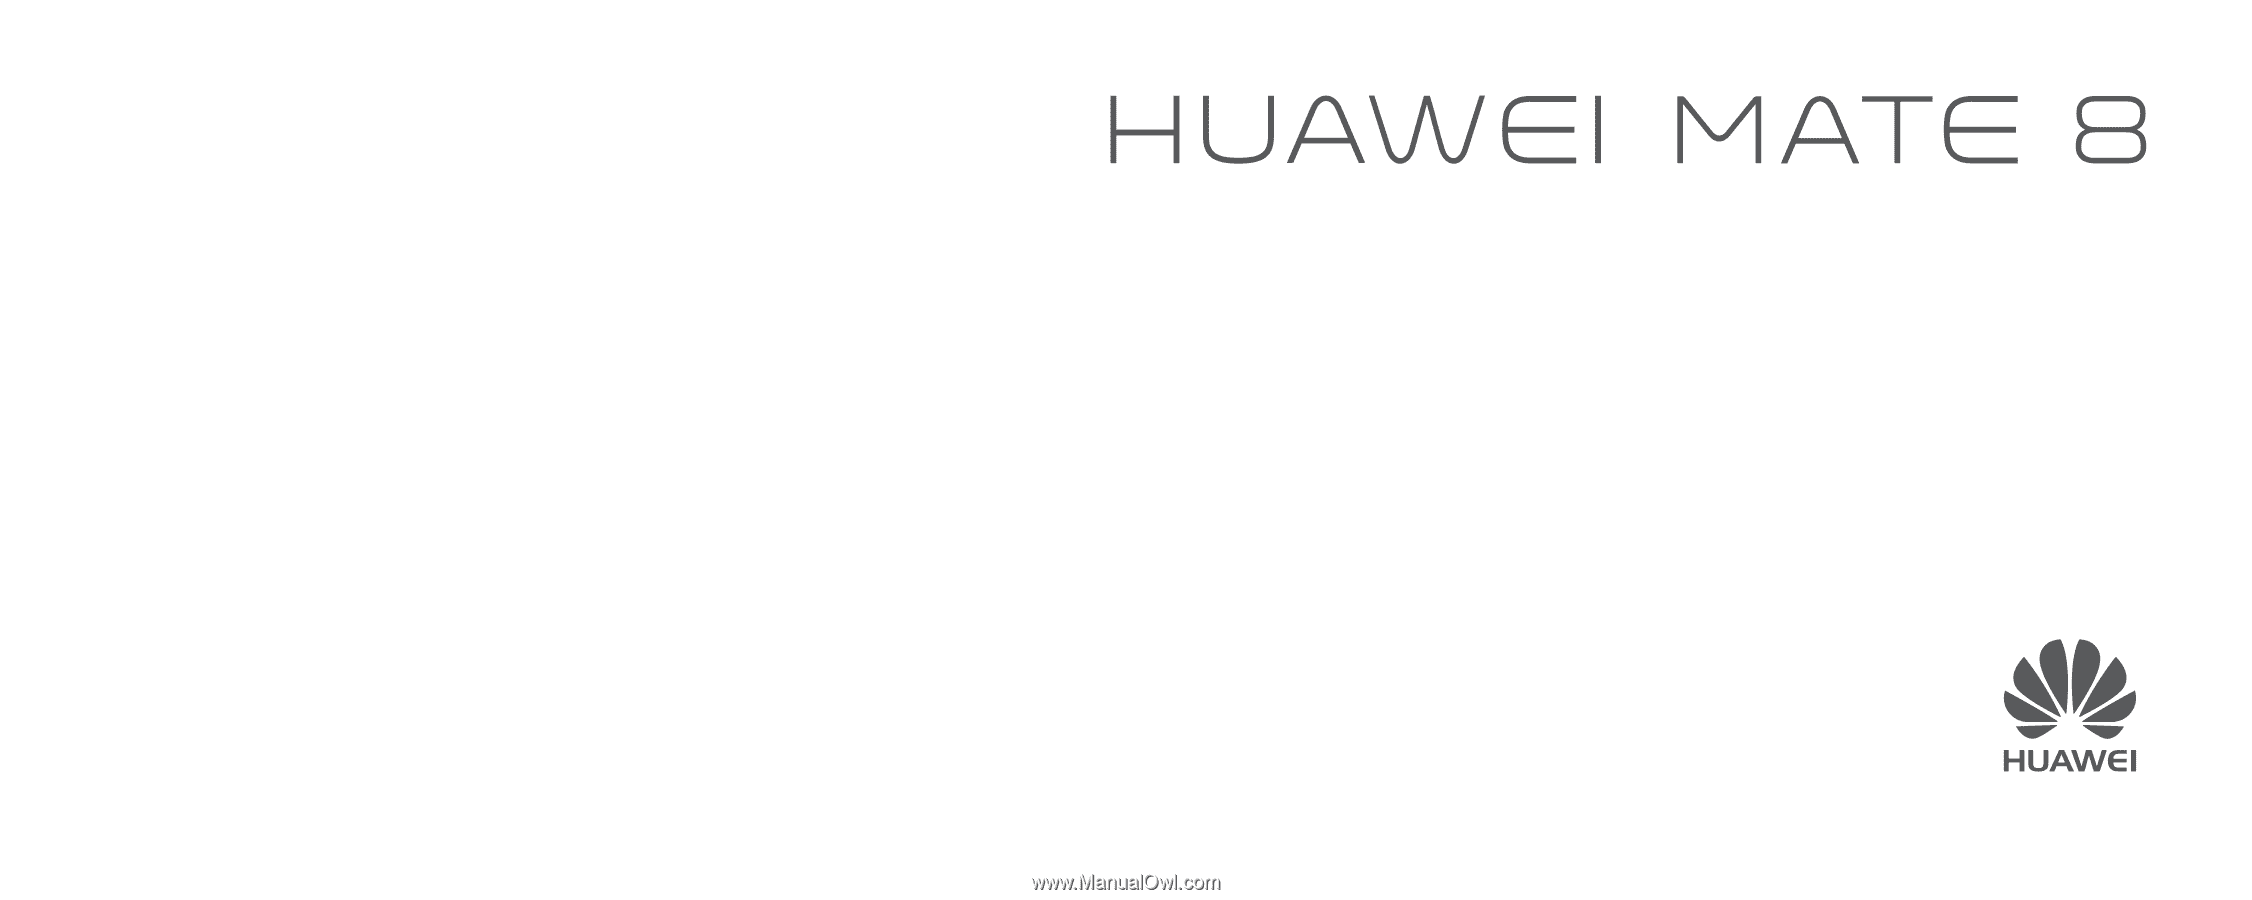 User huawei